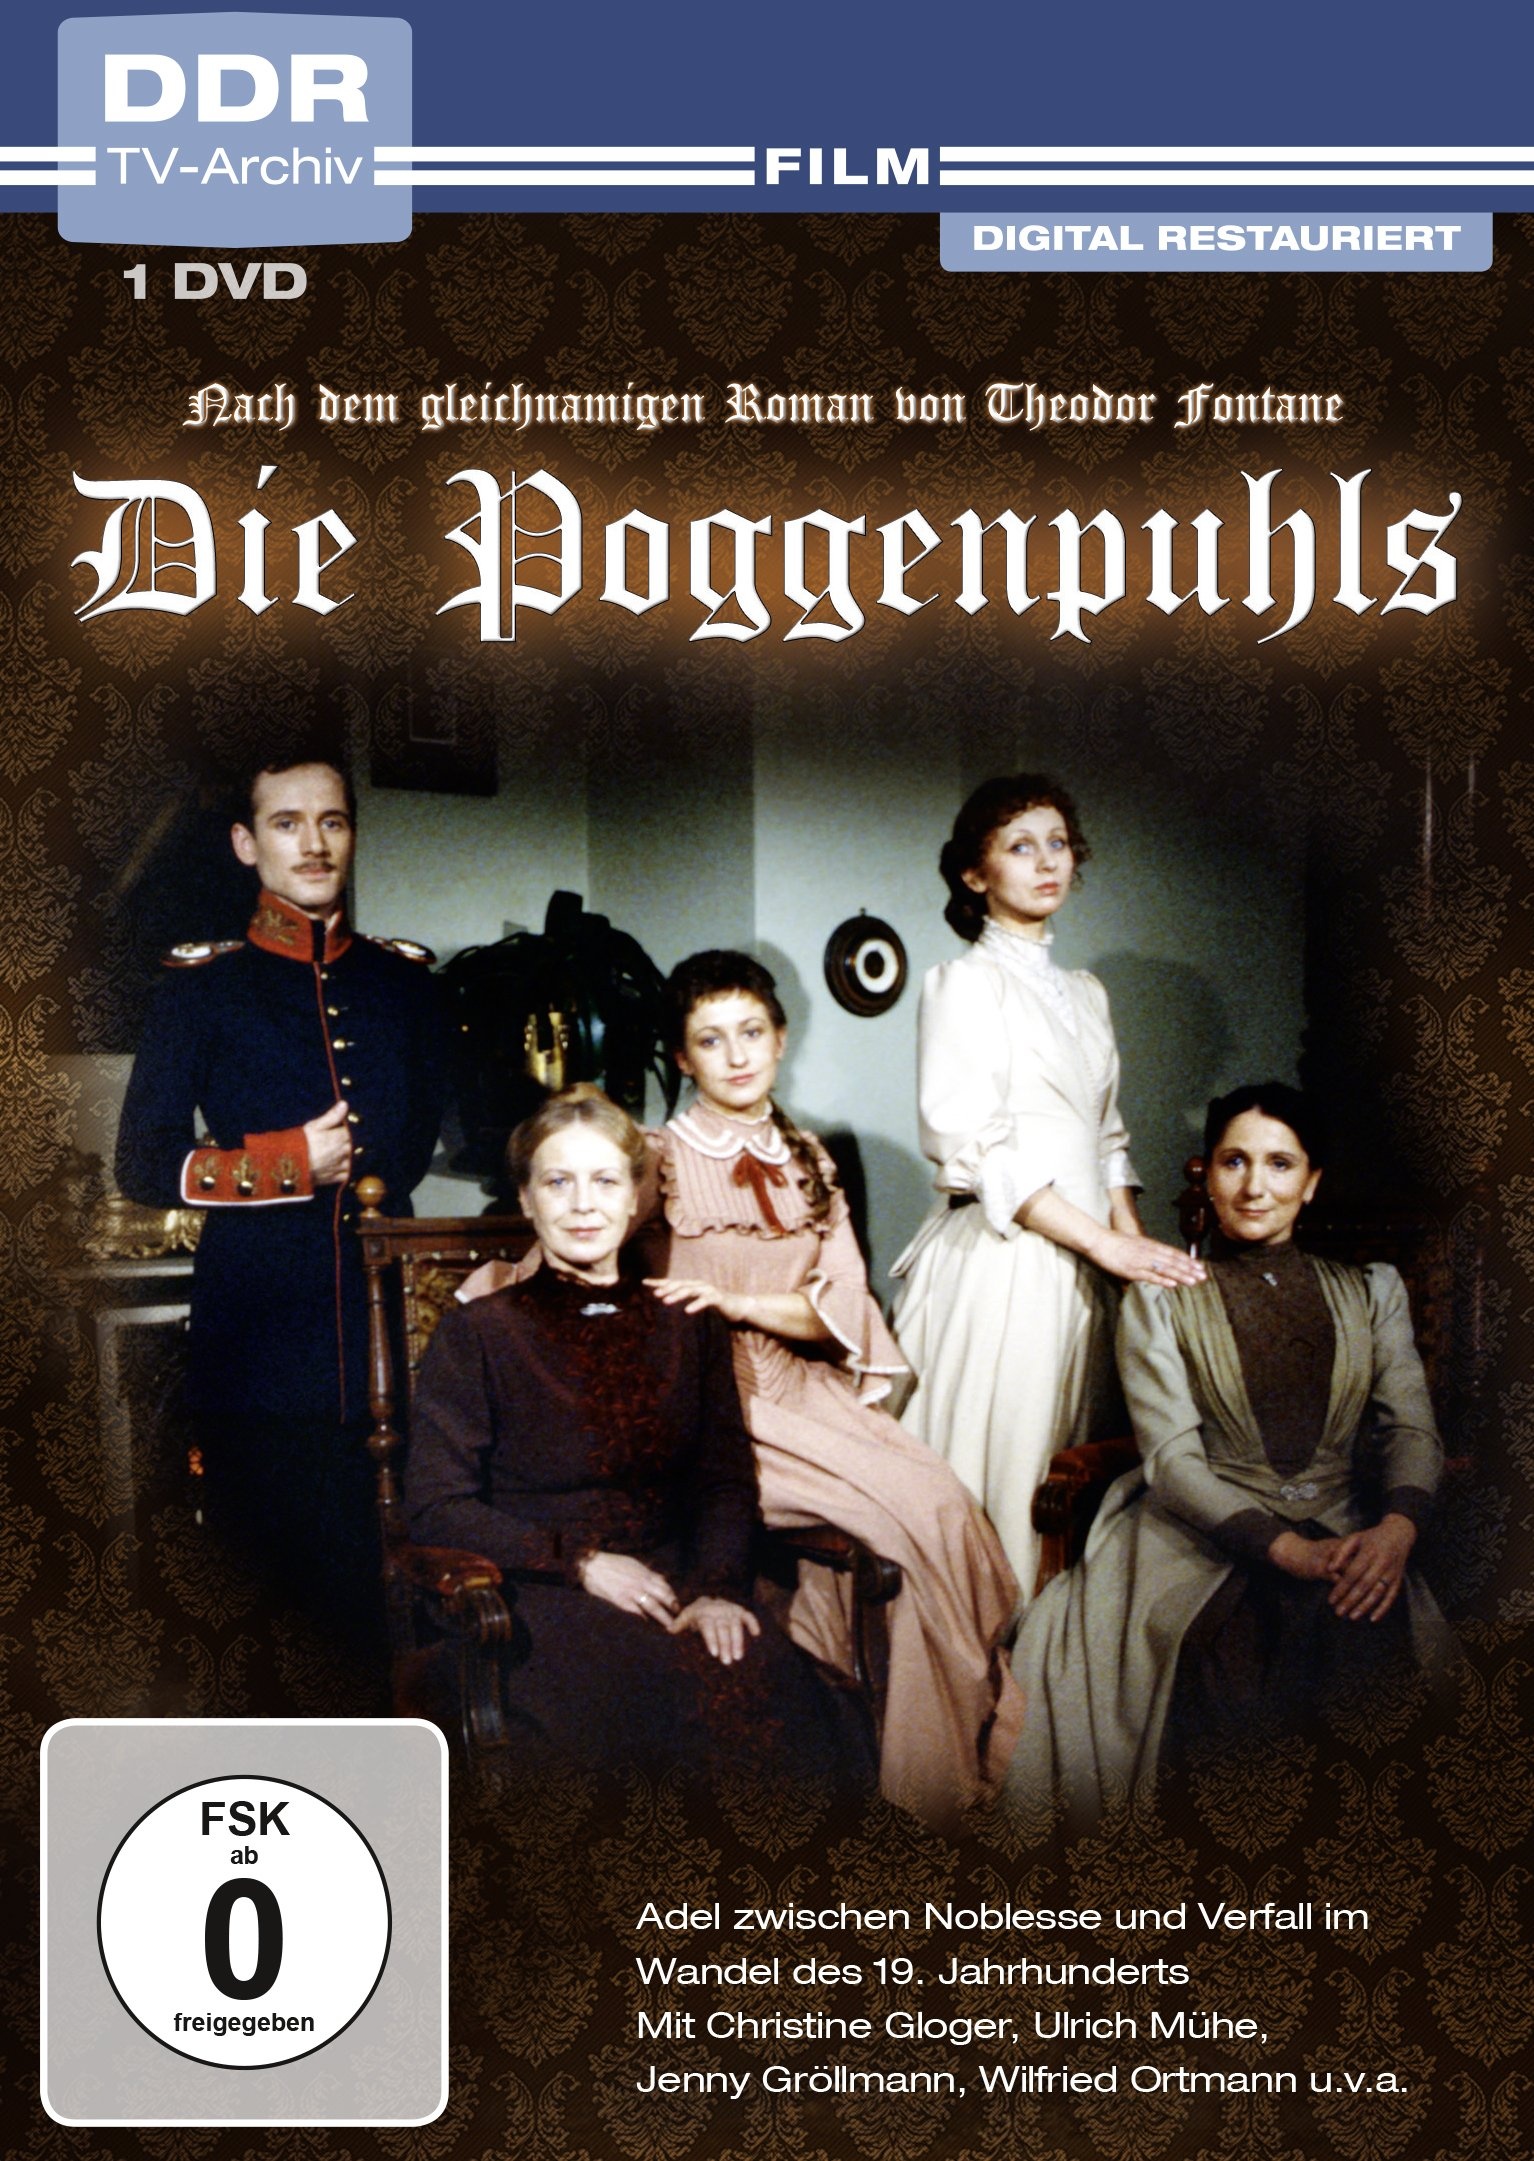 Die Poggenpuhls (DDR TV-Archiv) (Neu differenzbesteuert)